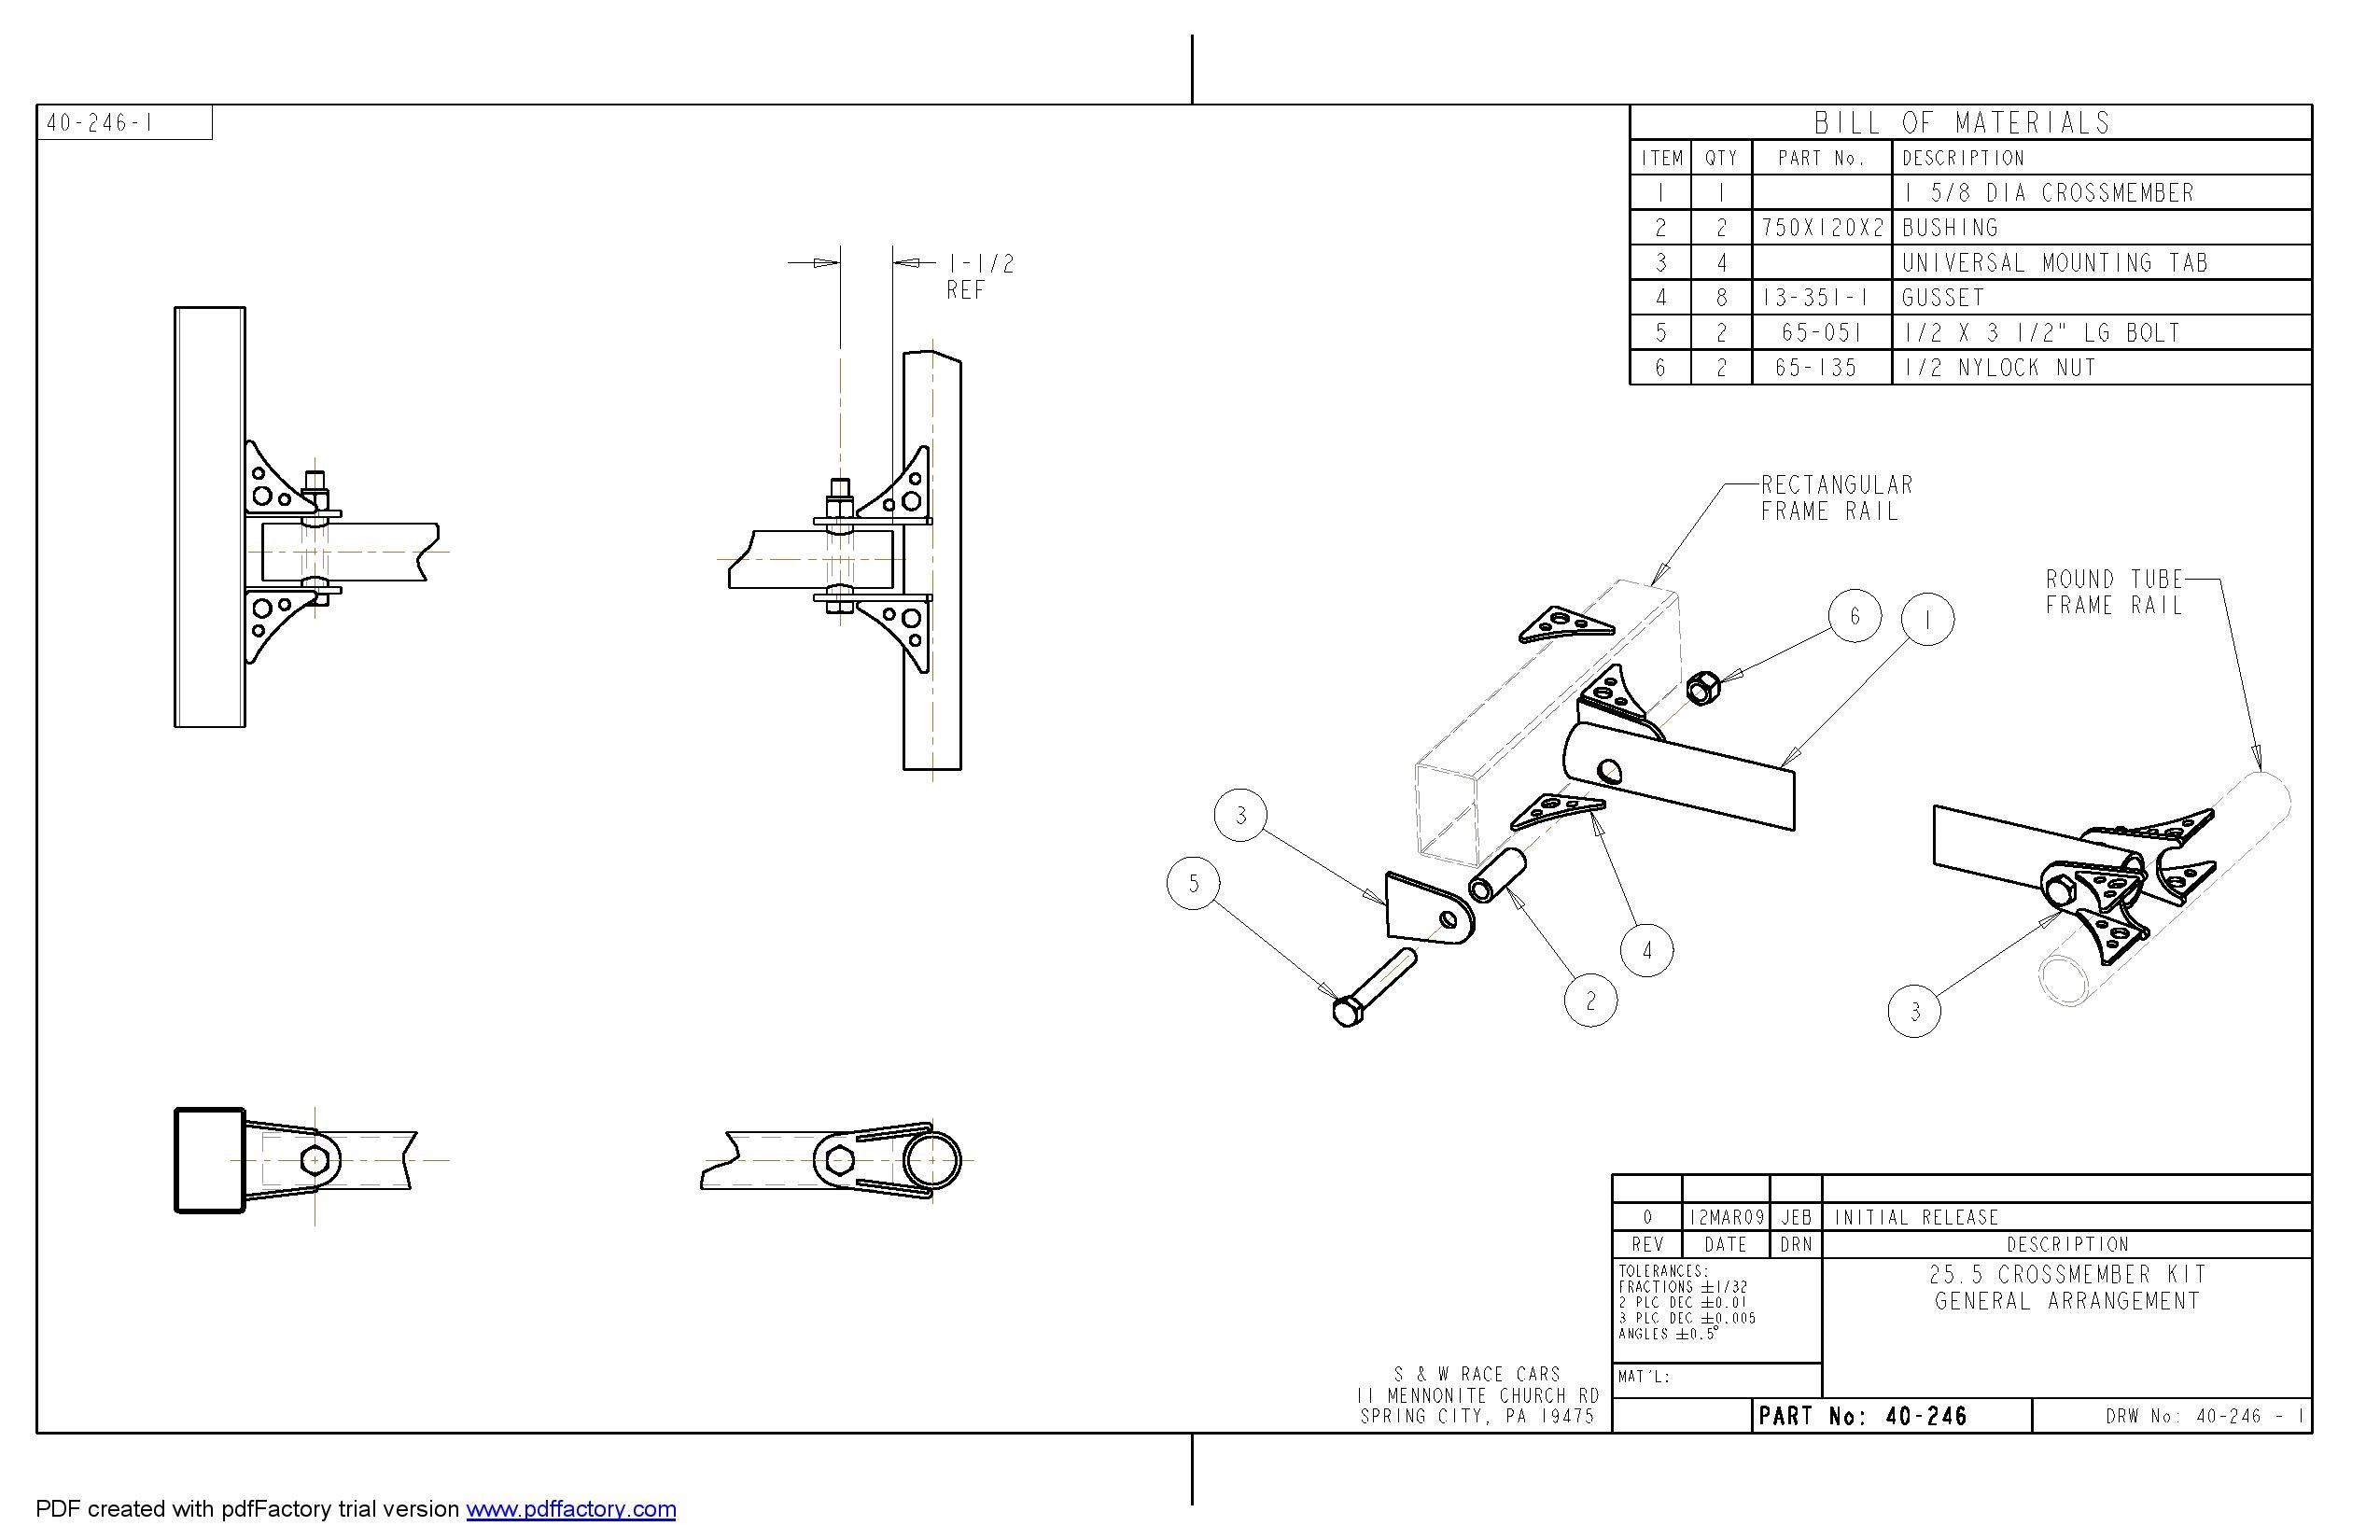 Removable Mild Steel Crossmember Kit  For Rectangular Frame Rails